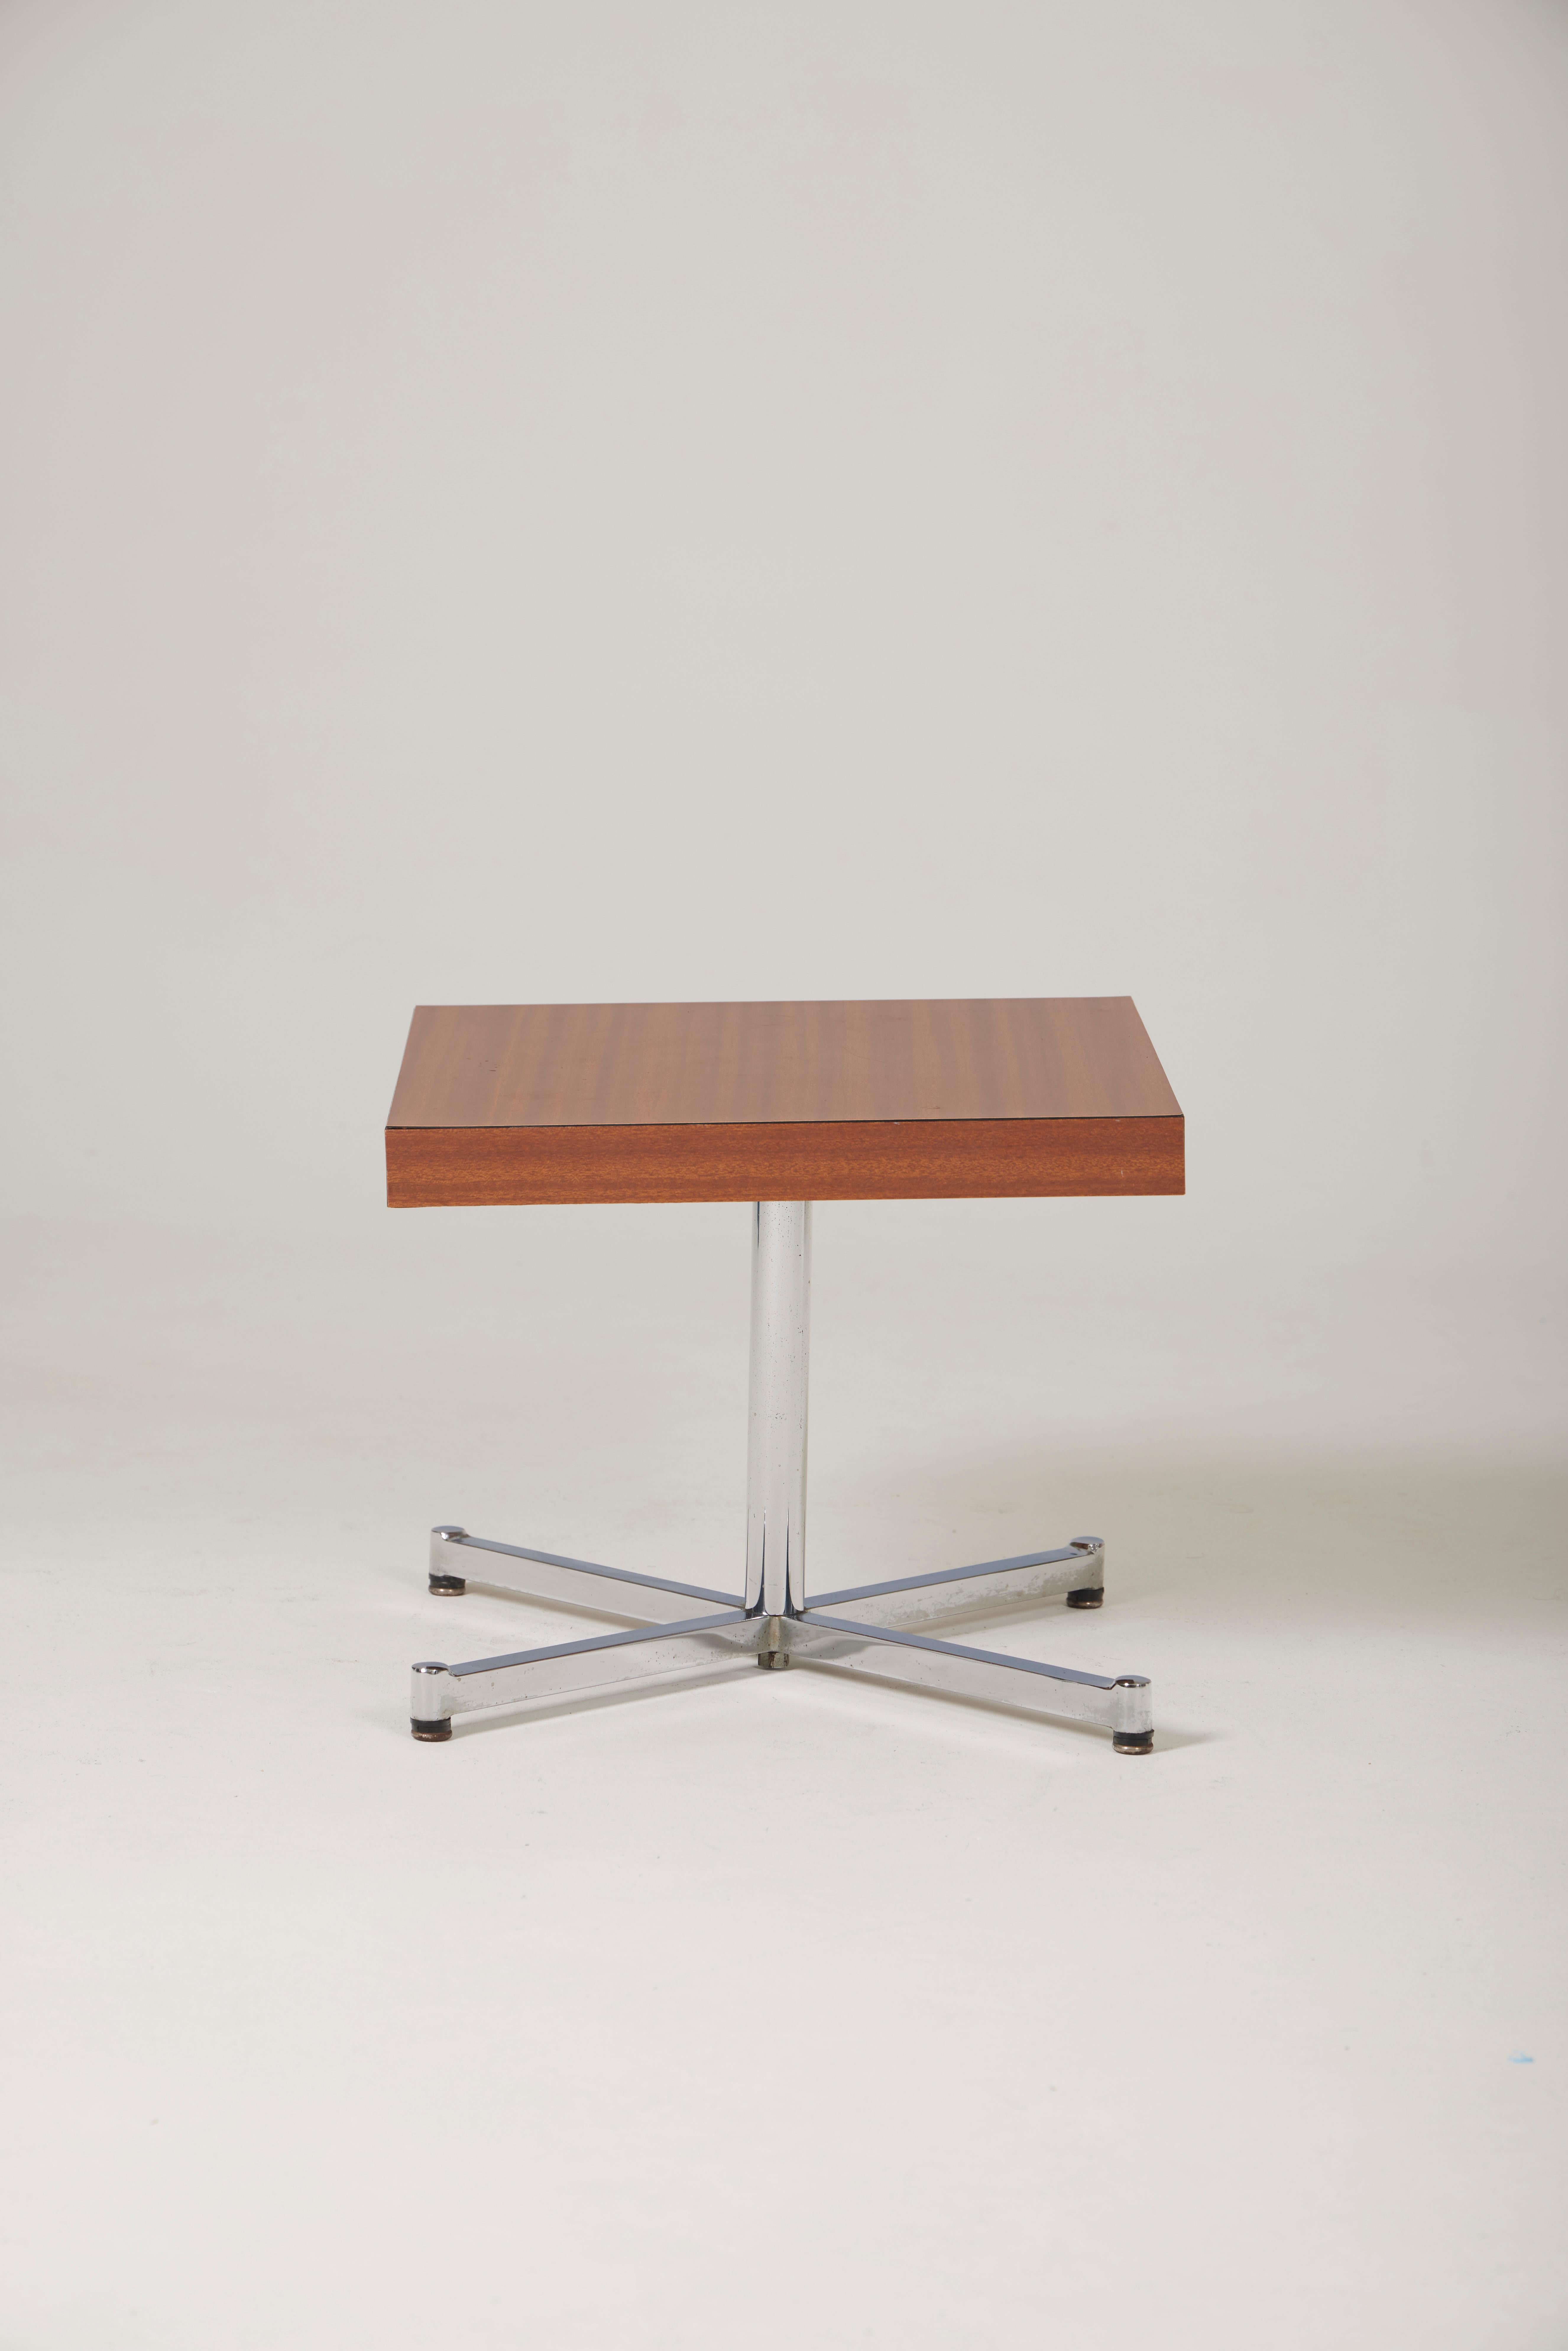 Table basse ou d'appoint du designer Pierre Guariche (1926-1995), années 1970. Plateau carré en bois sur une base en métal brossé. Très bon état. 2 tables disponibles.
LP1755-1756